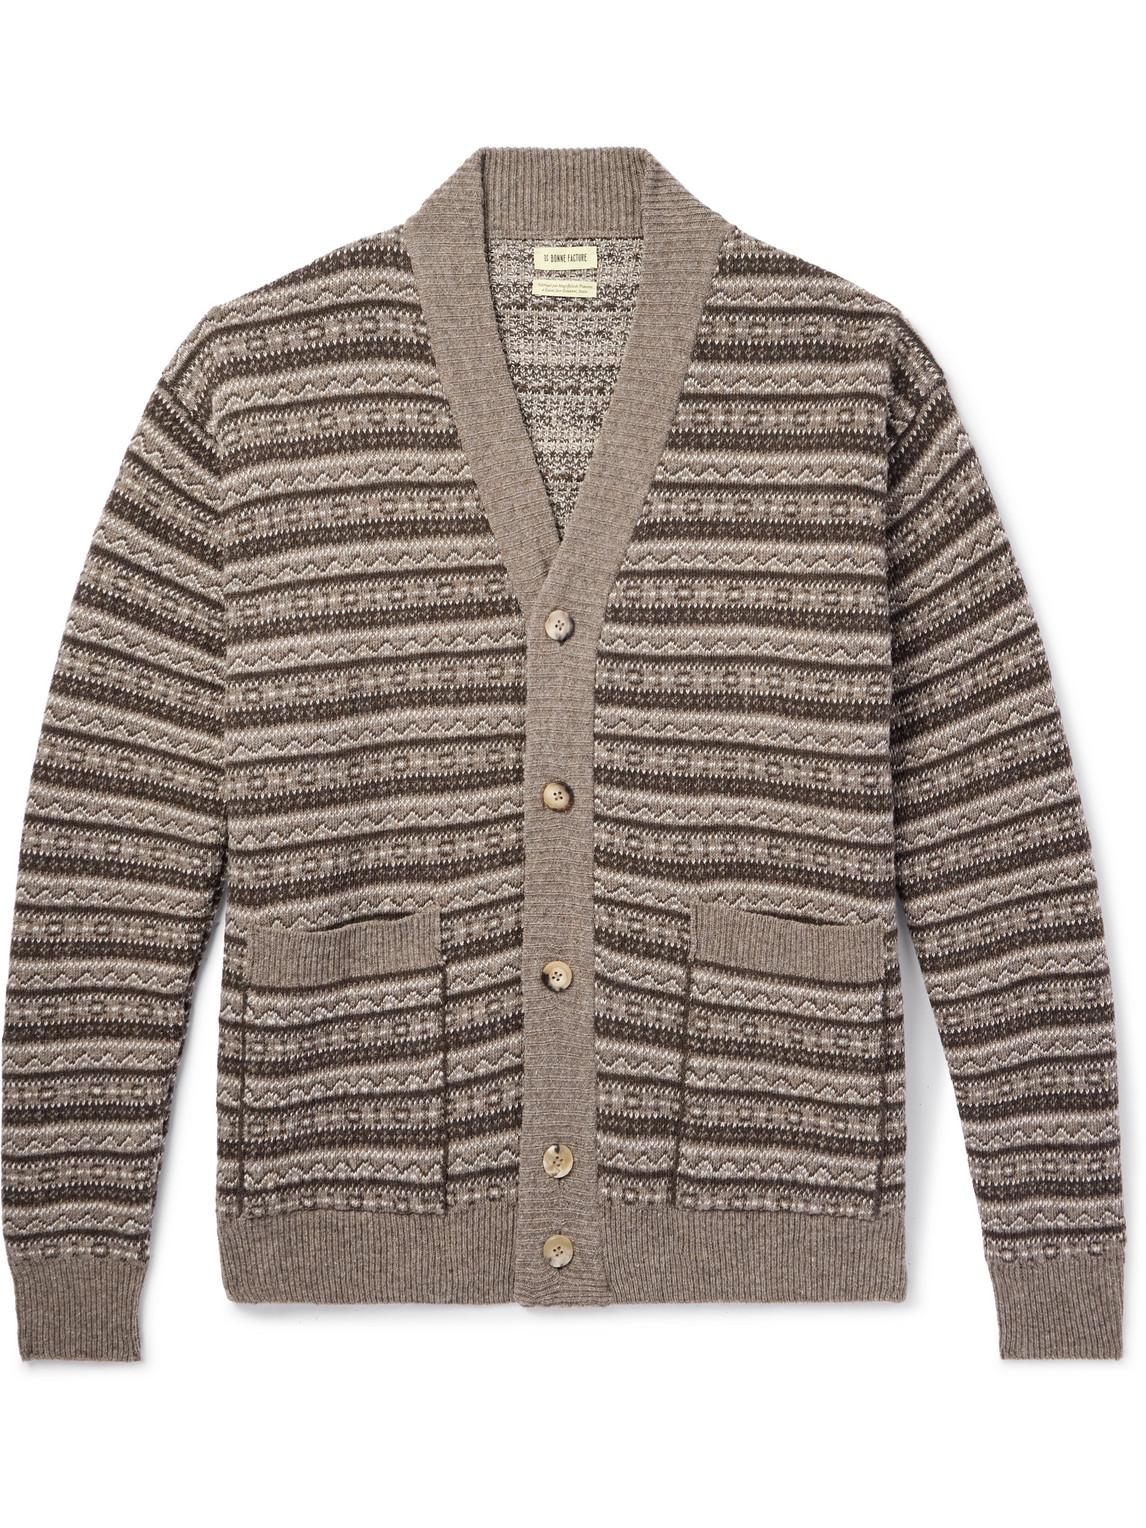 De Bonne Facture - Striped Wool Cardigan - Men - Brown - L von De Bonne Facture